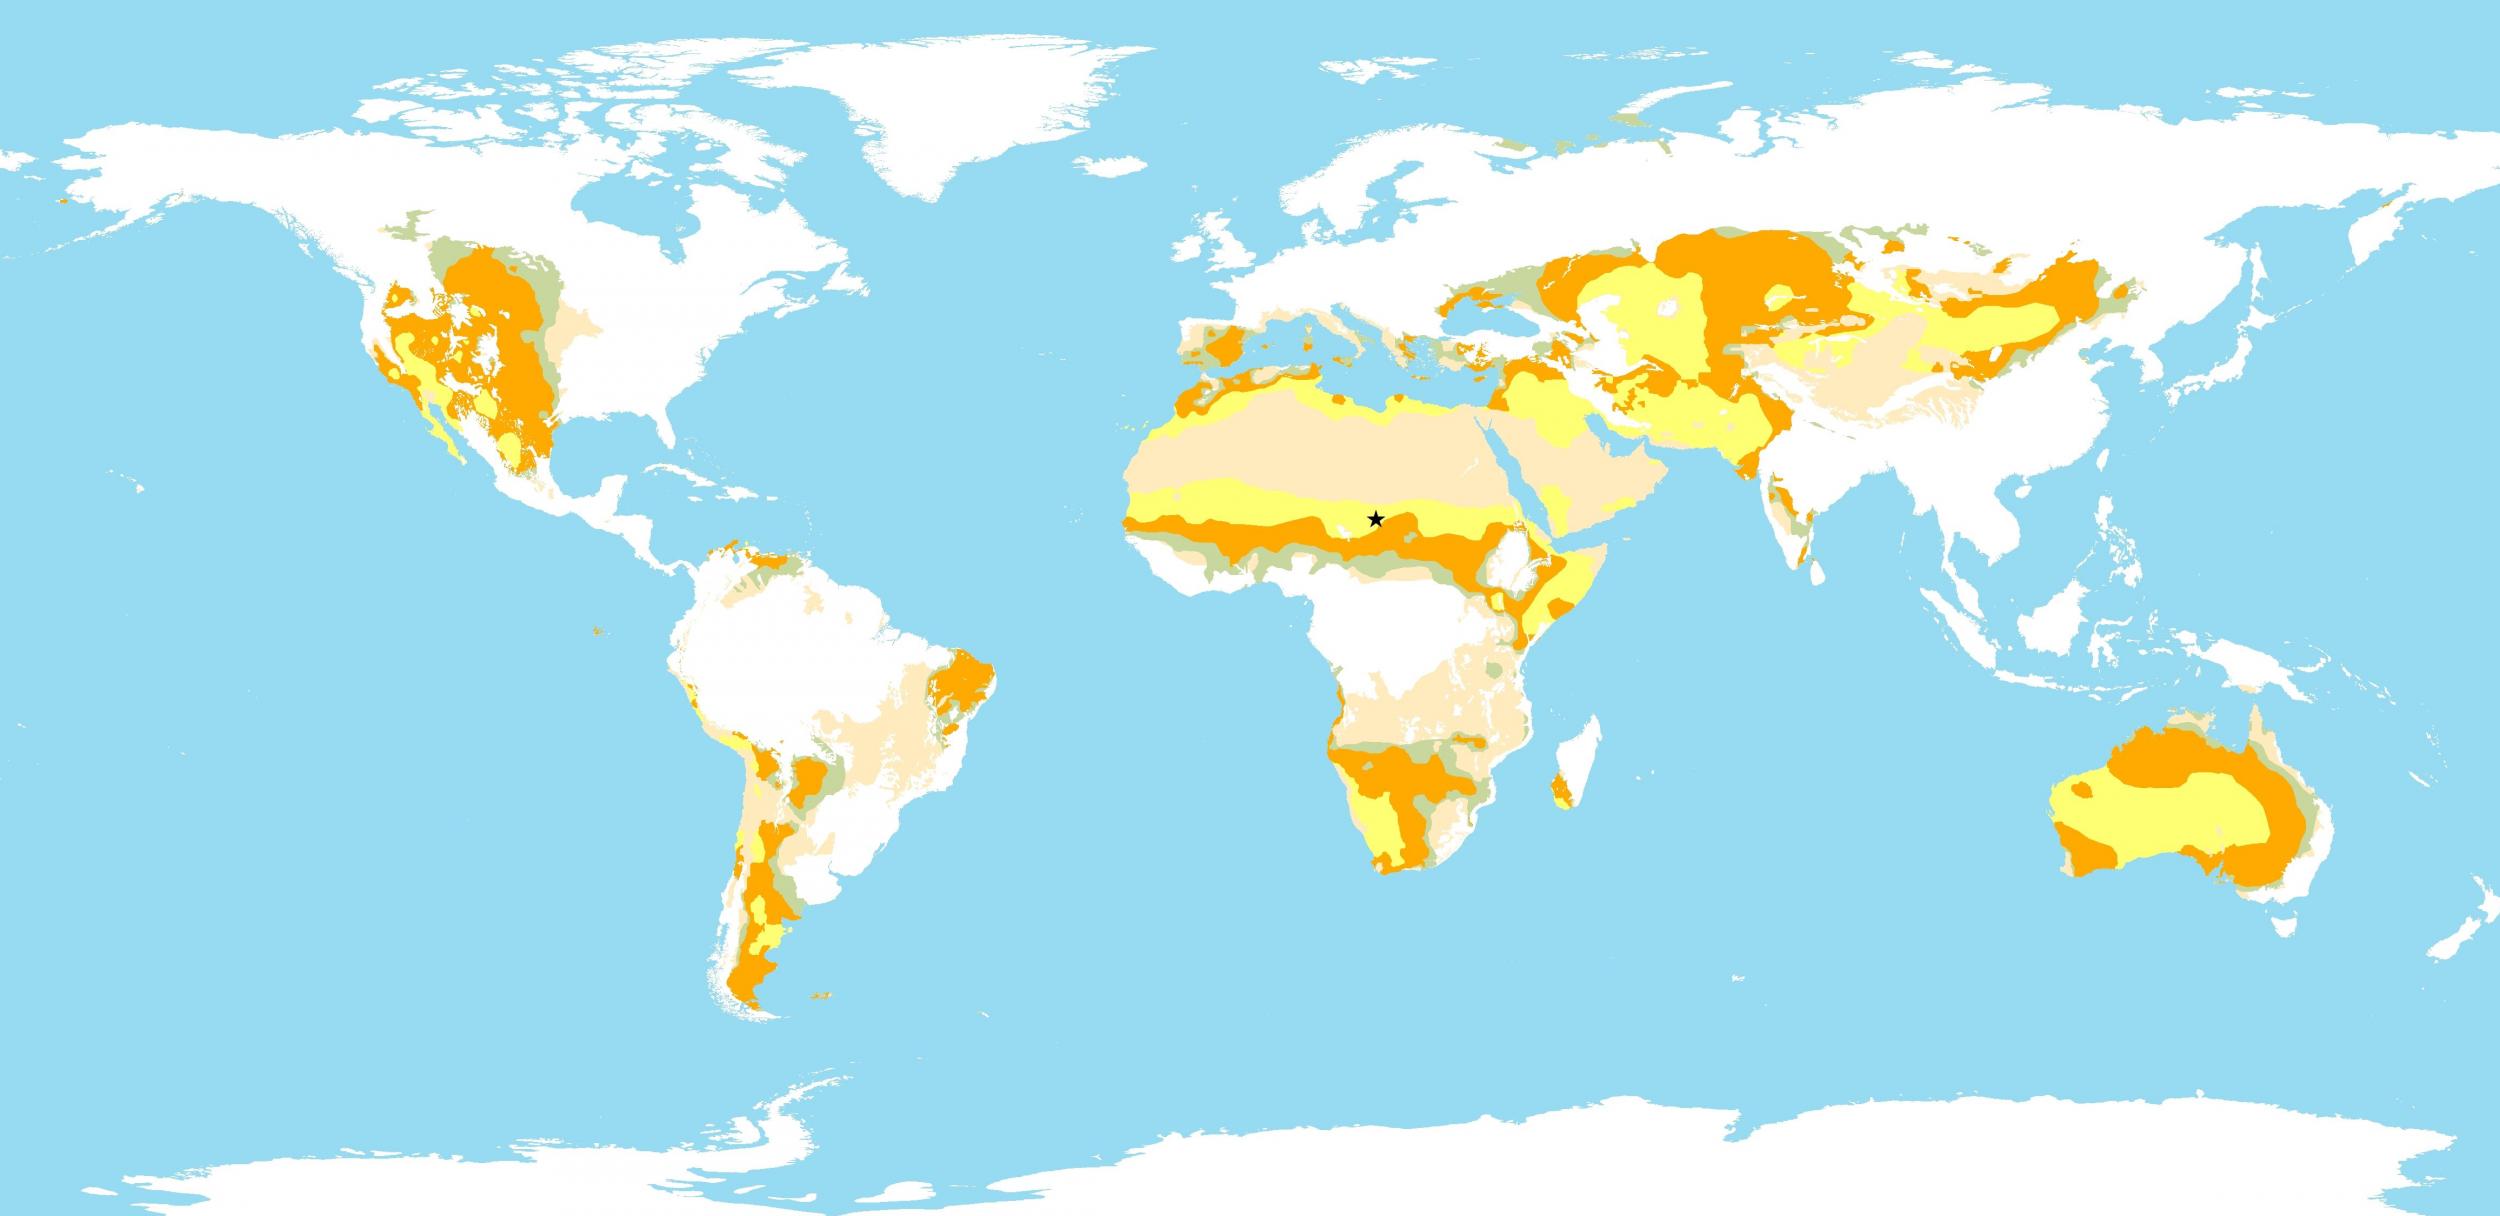 Dryland types found in rangelands globally